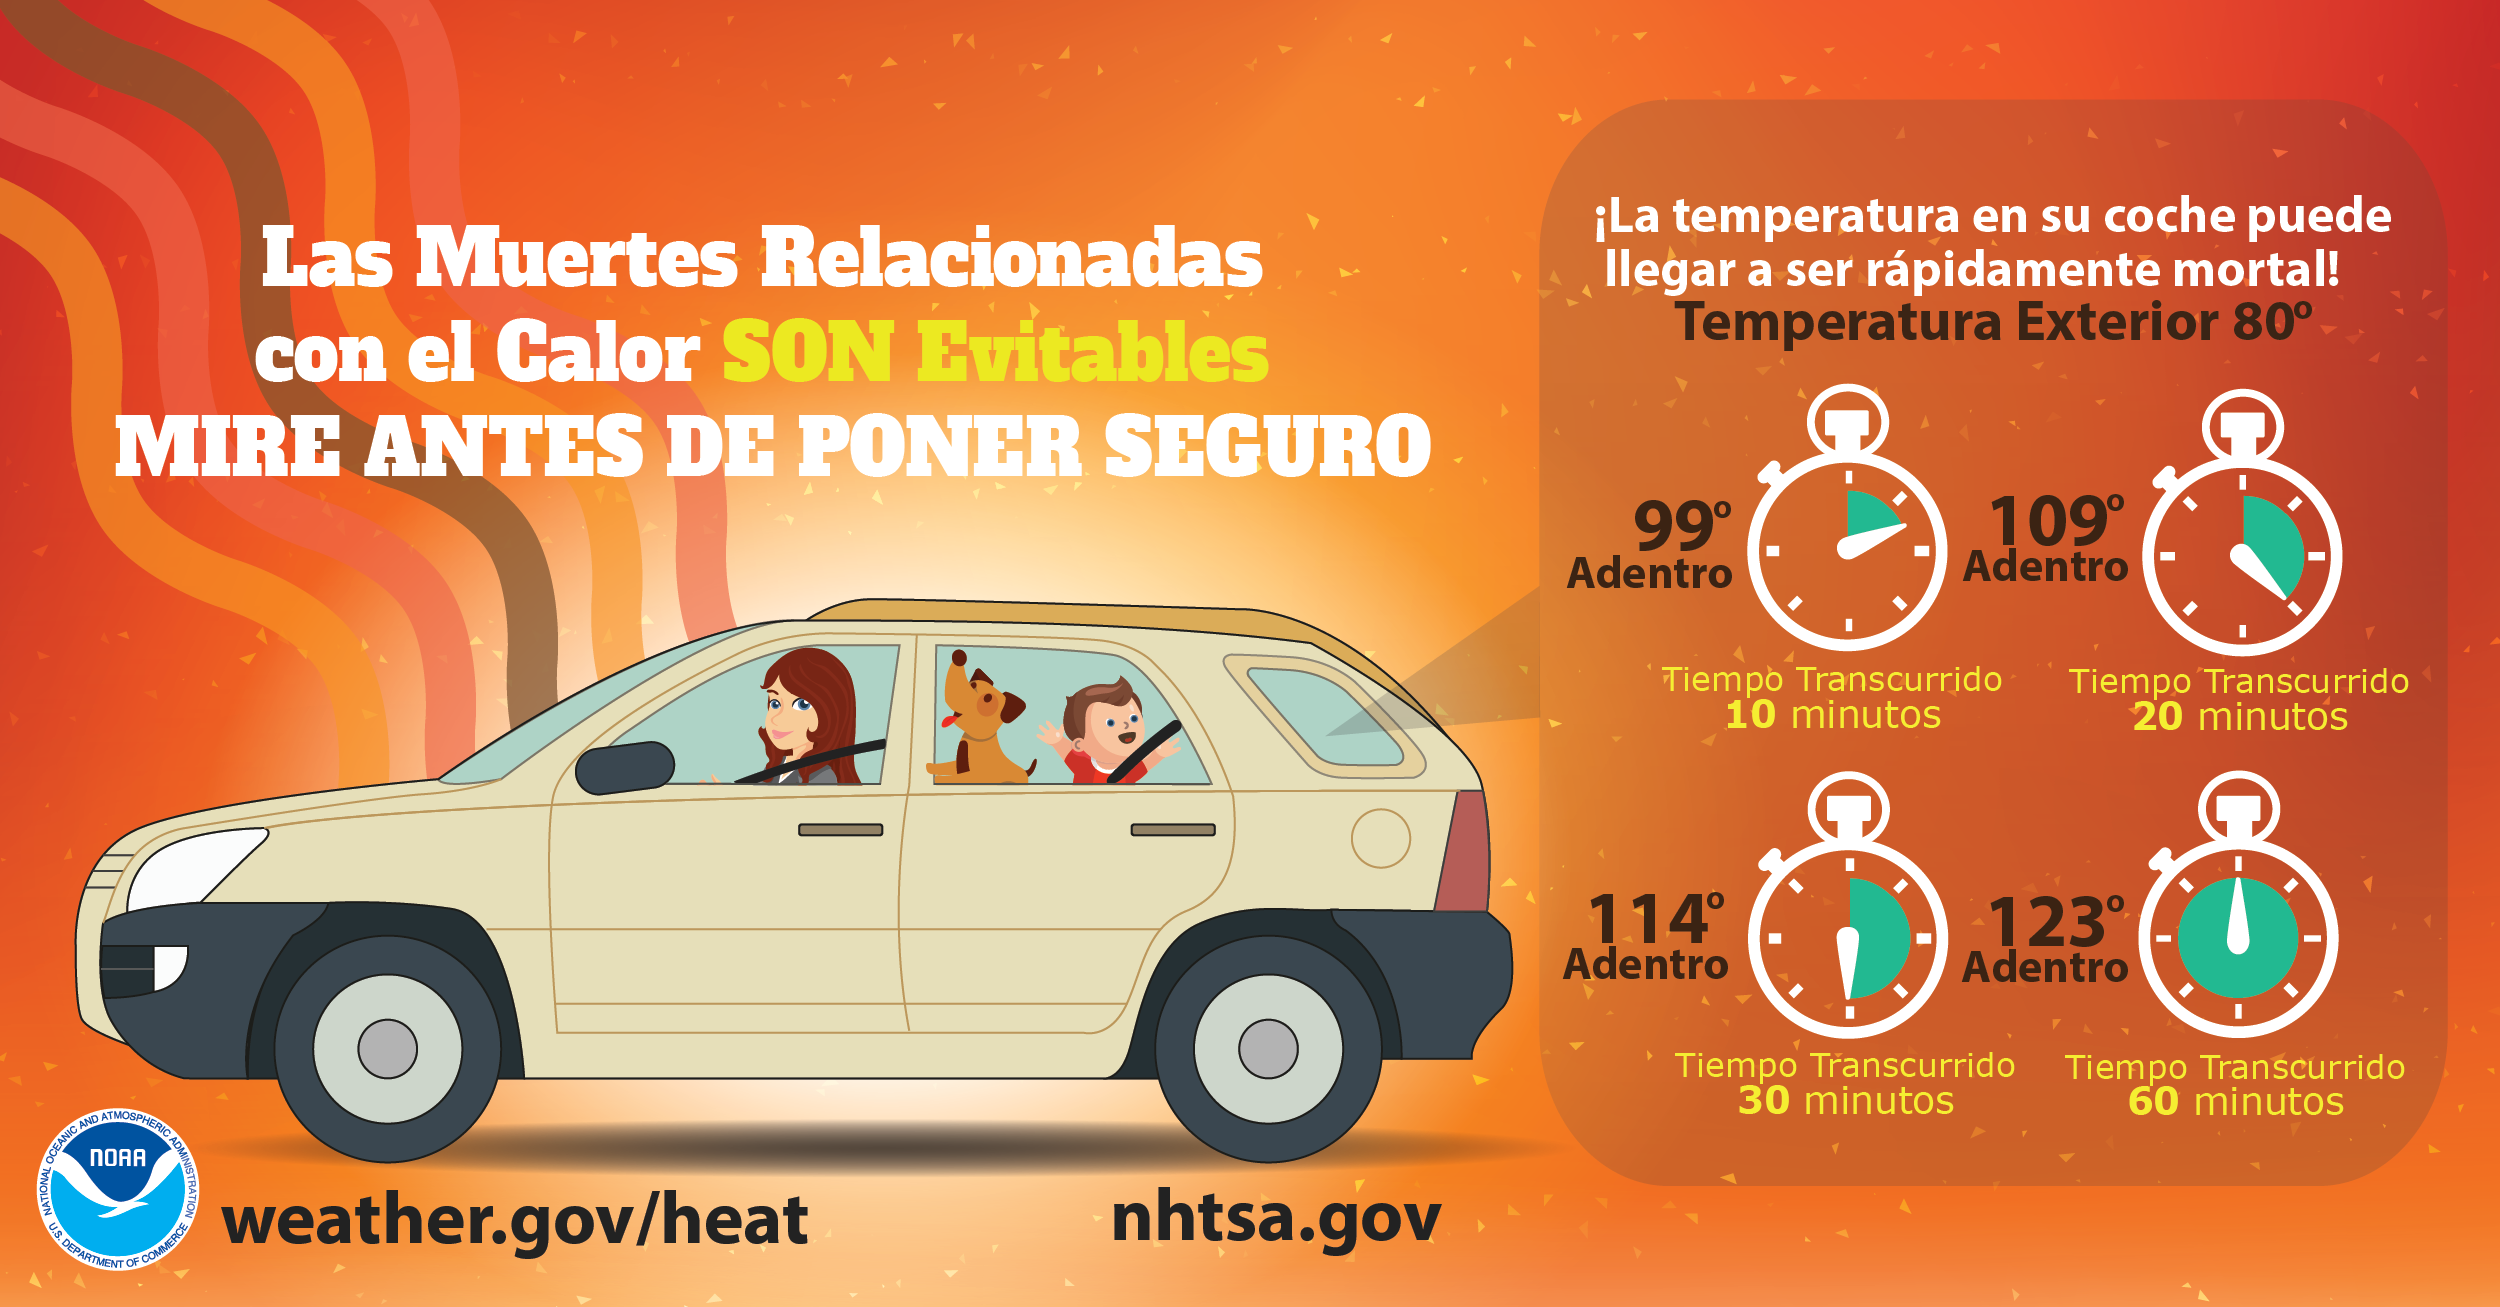 Las muertes relacionadas con el calor son evitables. Mire antes de poner seguro. ¡La temperatura en su coche puede llegar a ser rápidamente mortal!